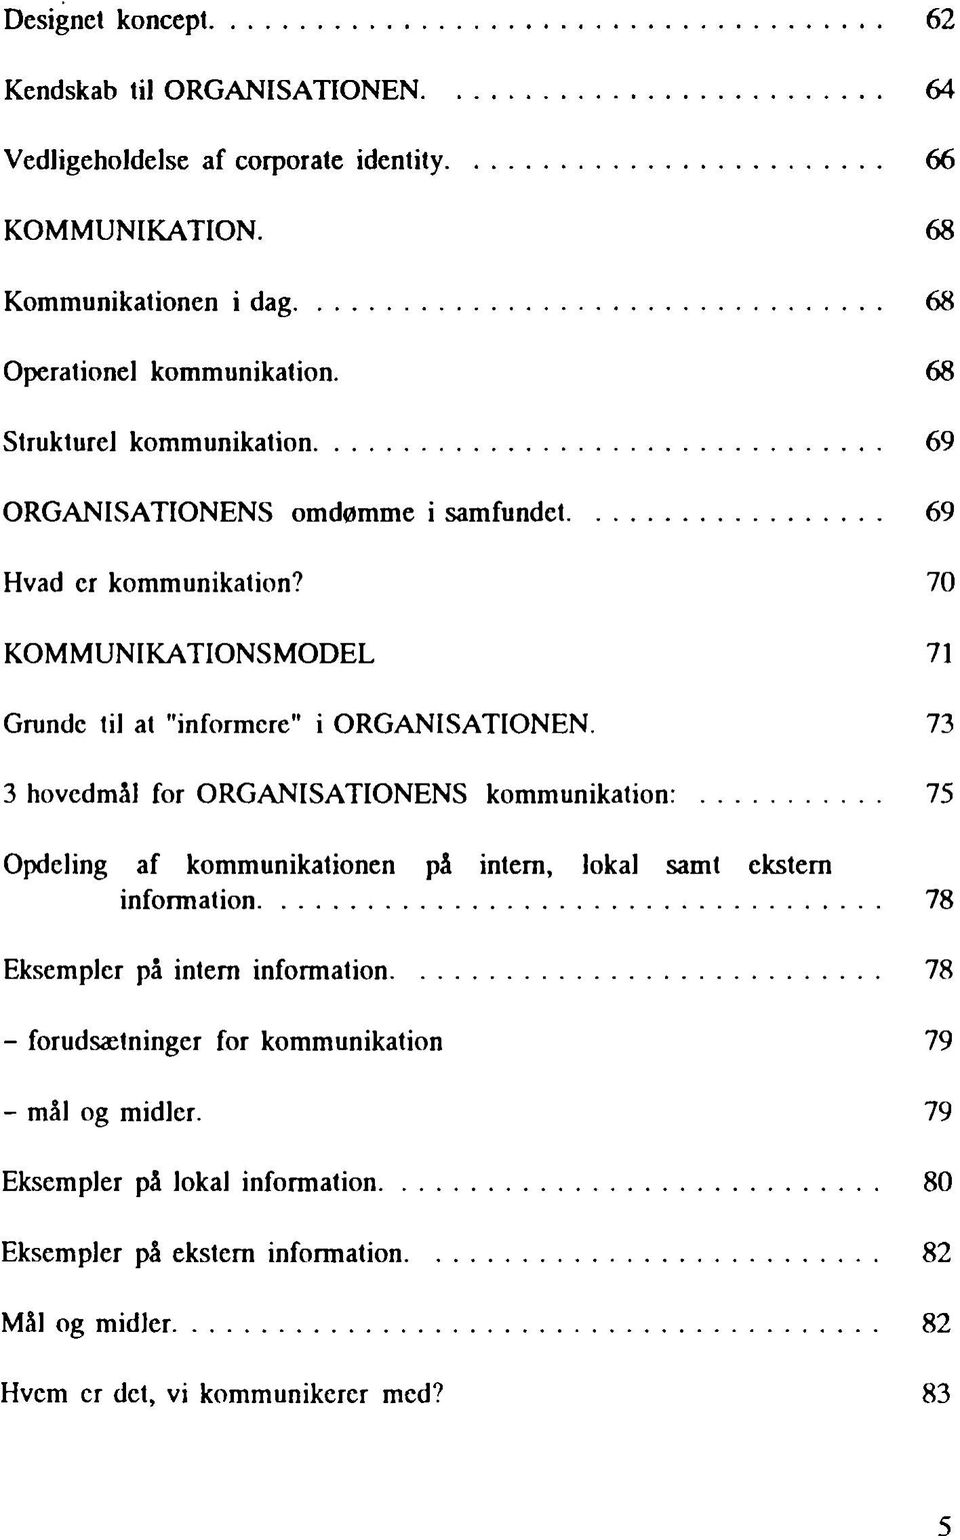 73 3 hovedmål for ORGANISATIONENS kommunikation:... 75 Opdeling af kommunikationen på intern, lokal samt ekstern information... 78 Eksempler på intern information.